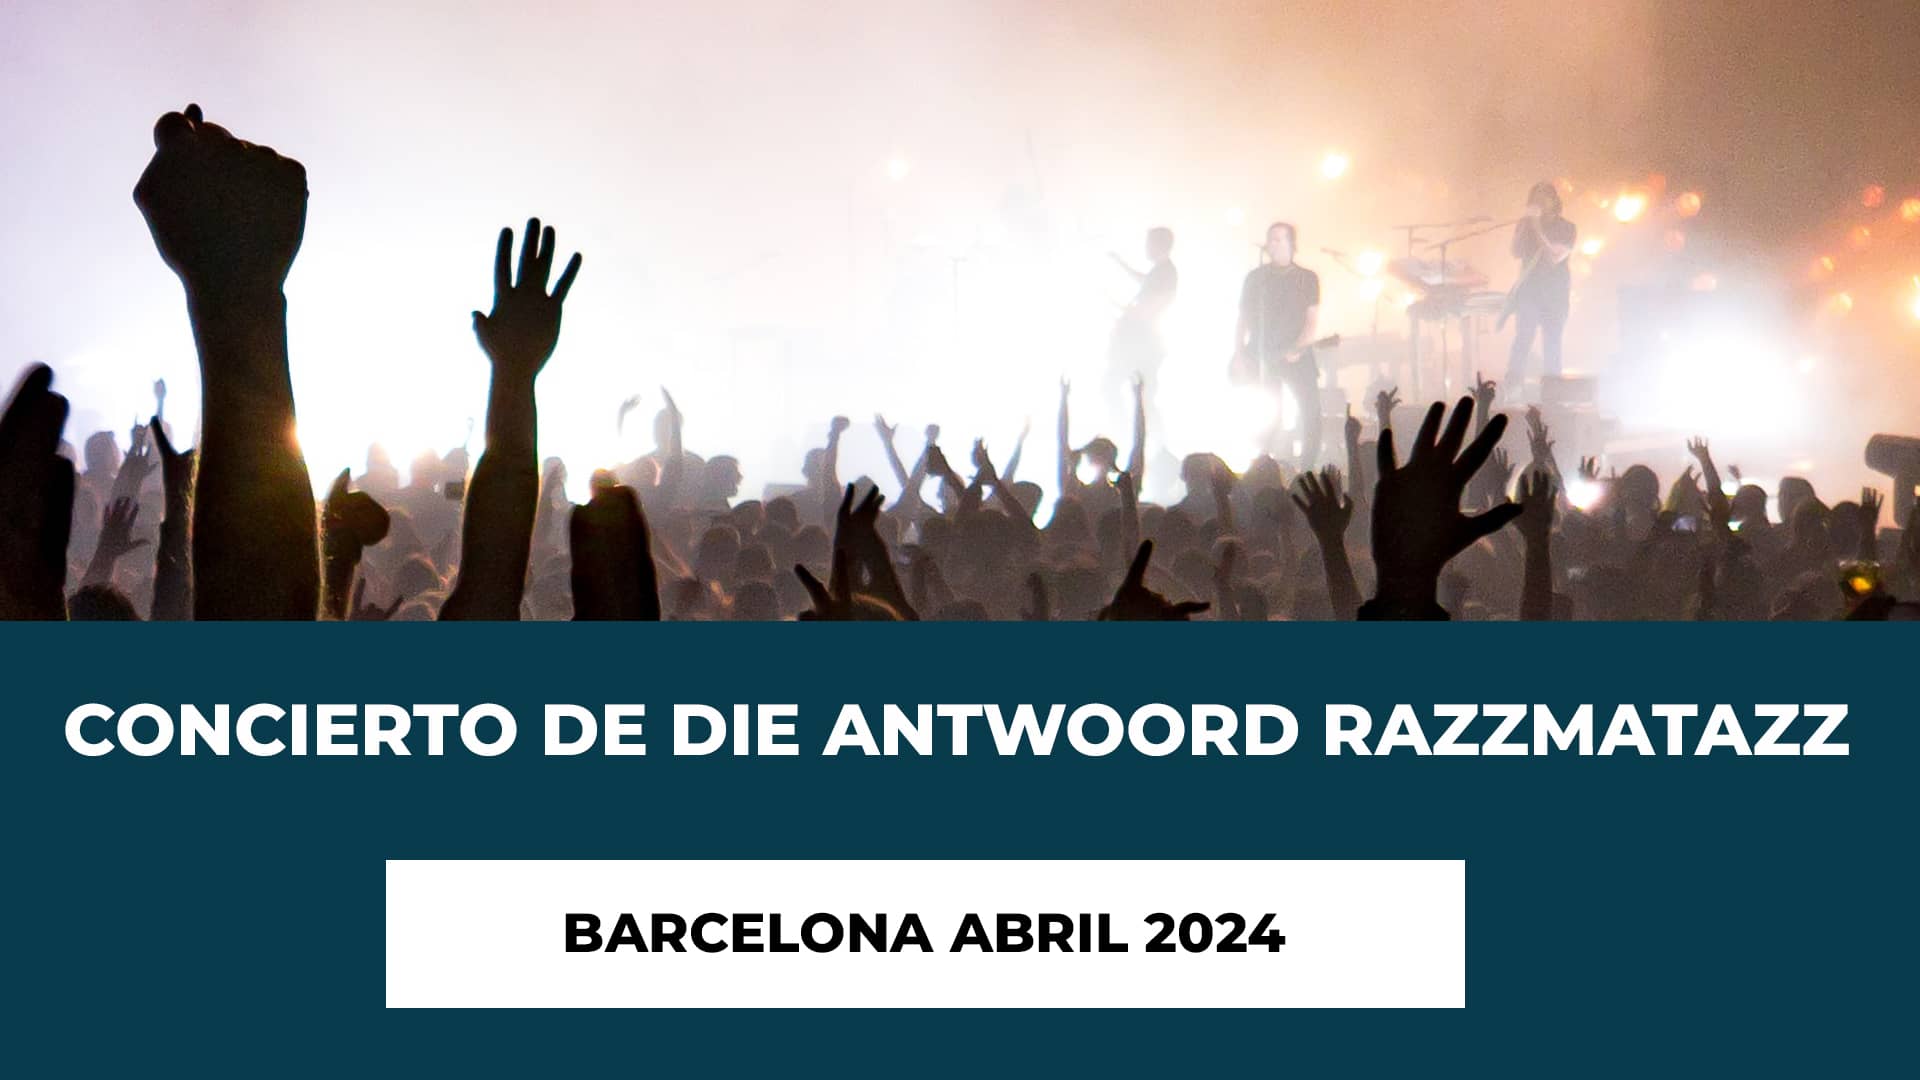 Concierto de Die Antwoord Razzmatazz Barcelona Abril 2024 - Fecha - Recinto - Horario - Entradas - Restricciones de Edad - Precio